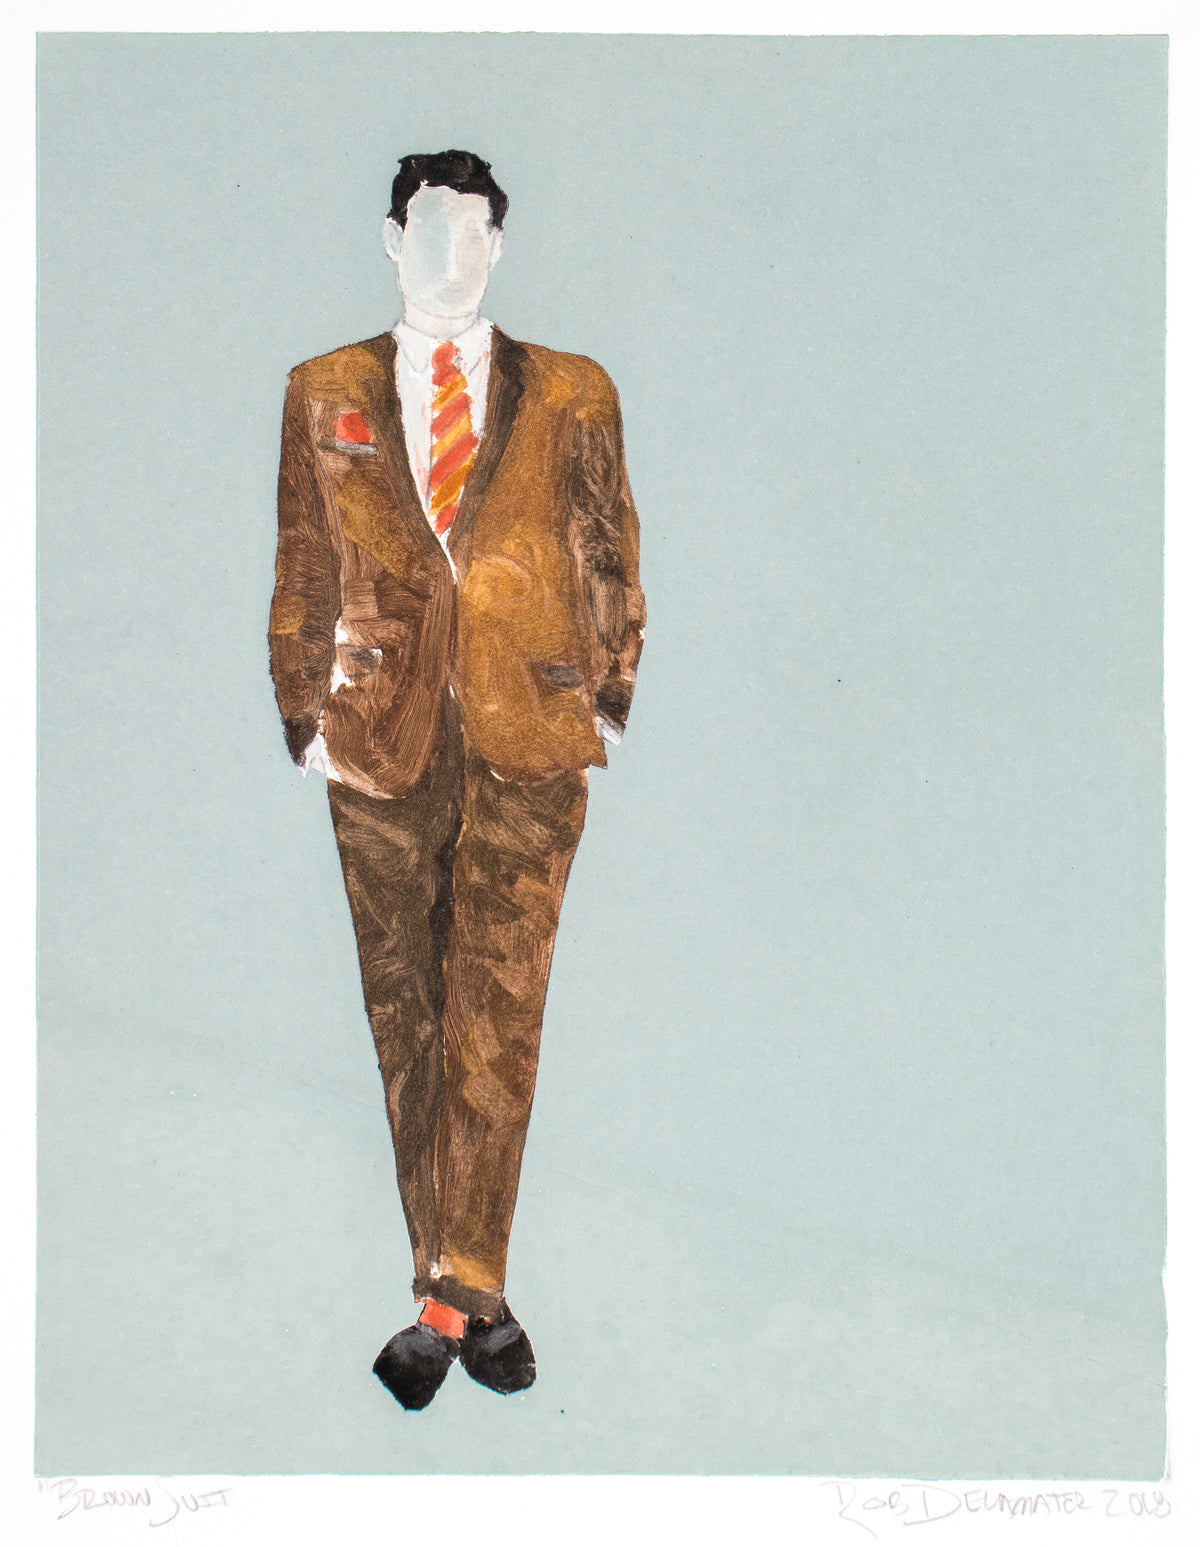 &lt;i&gt;Brown Suit&lt;/i&gt; &lt;br&gt;2018 Monotype &lt;br&gt;&lt;br&gt;#C0203